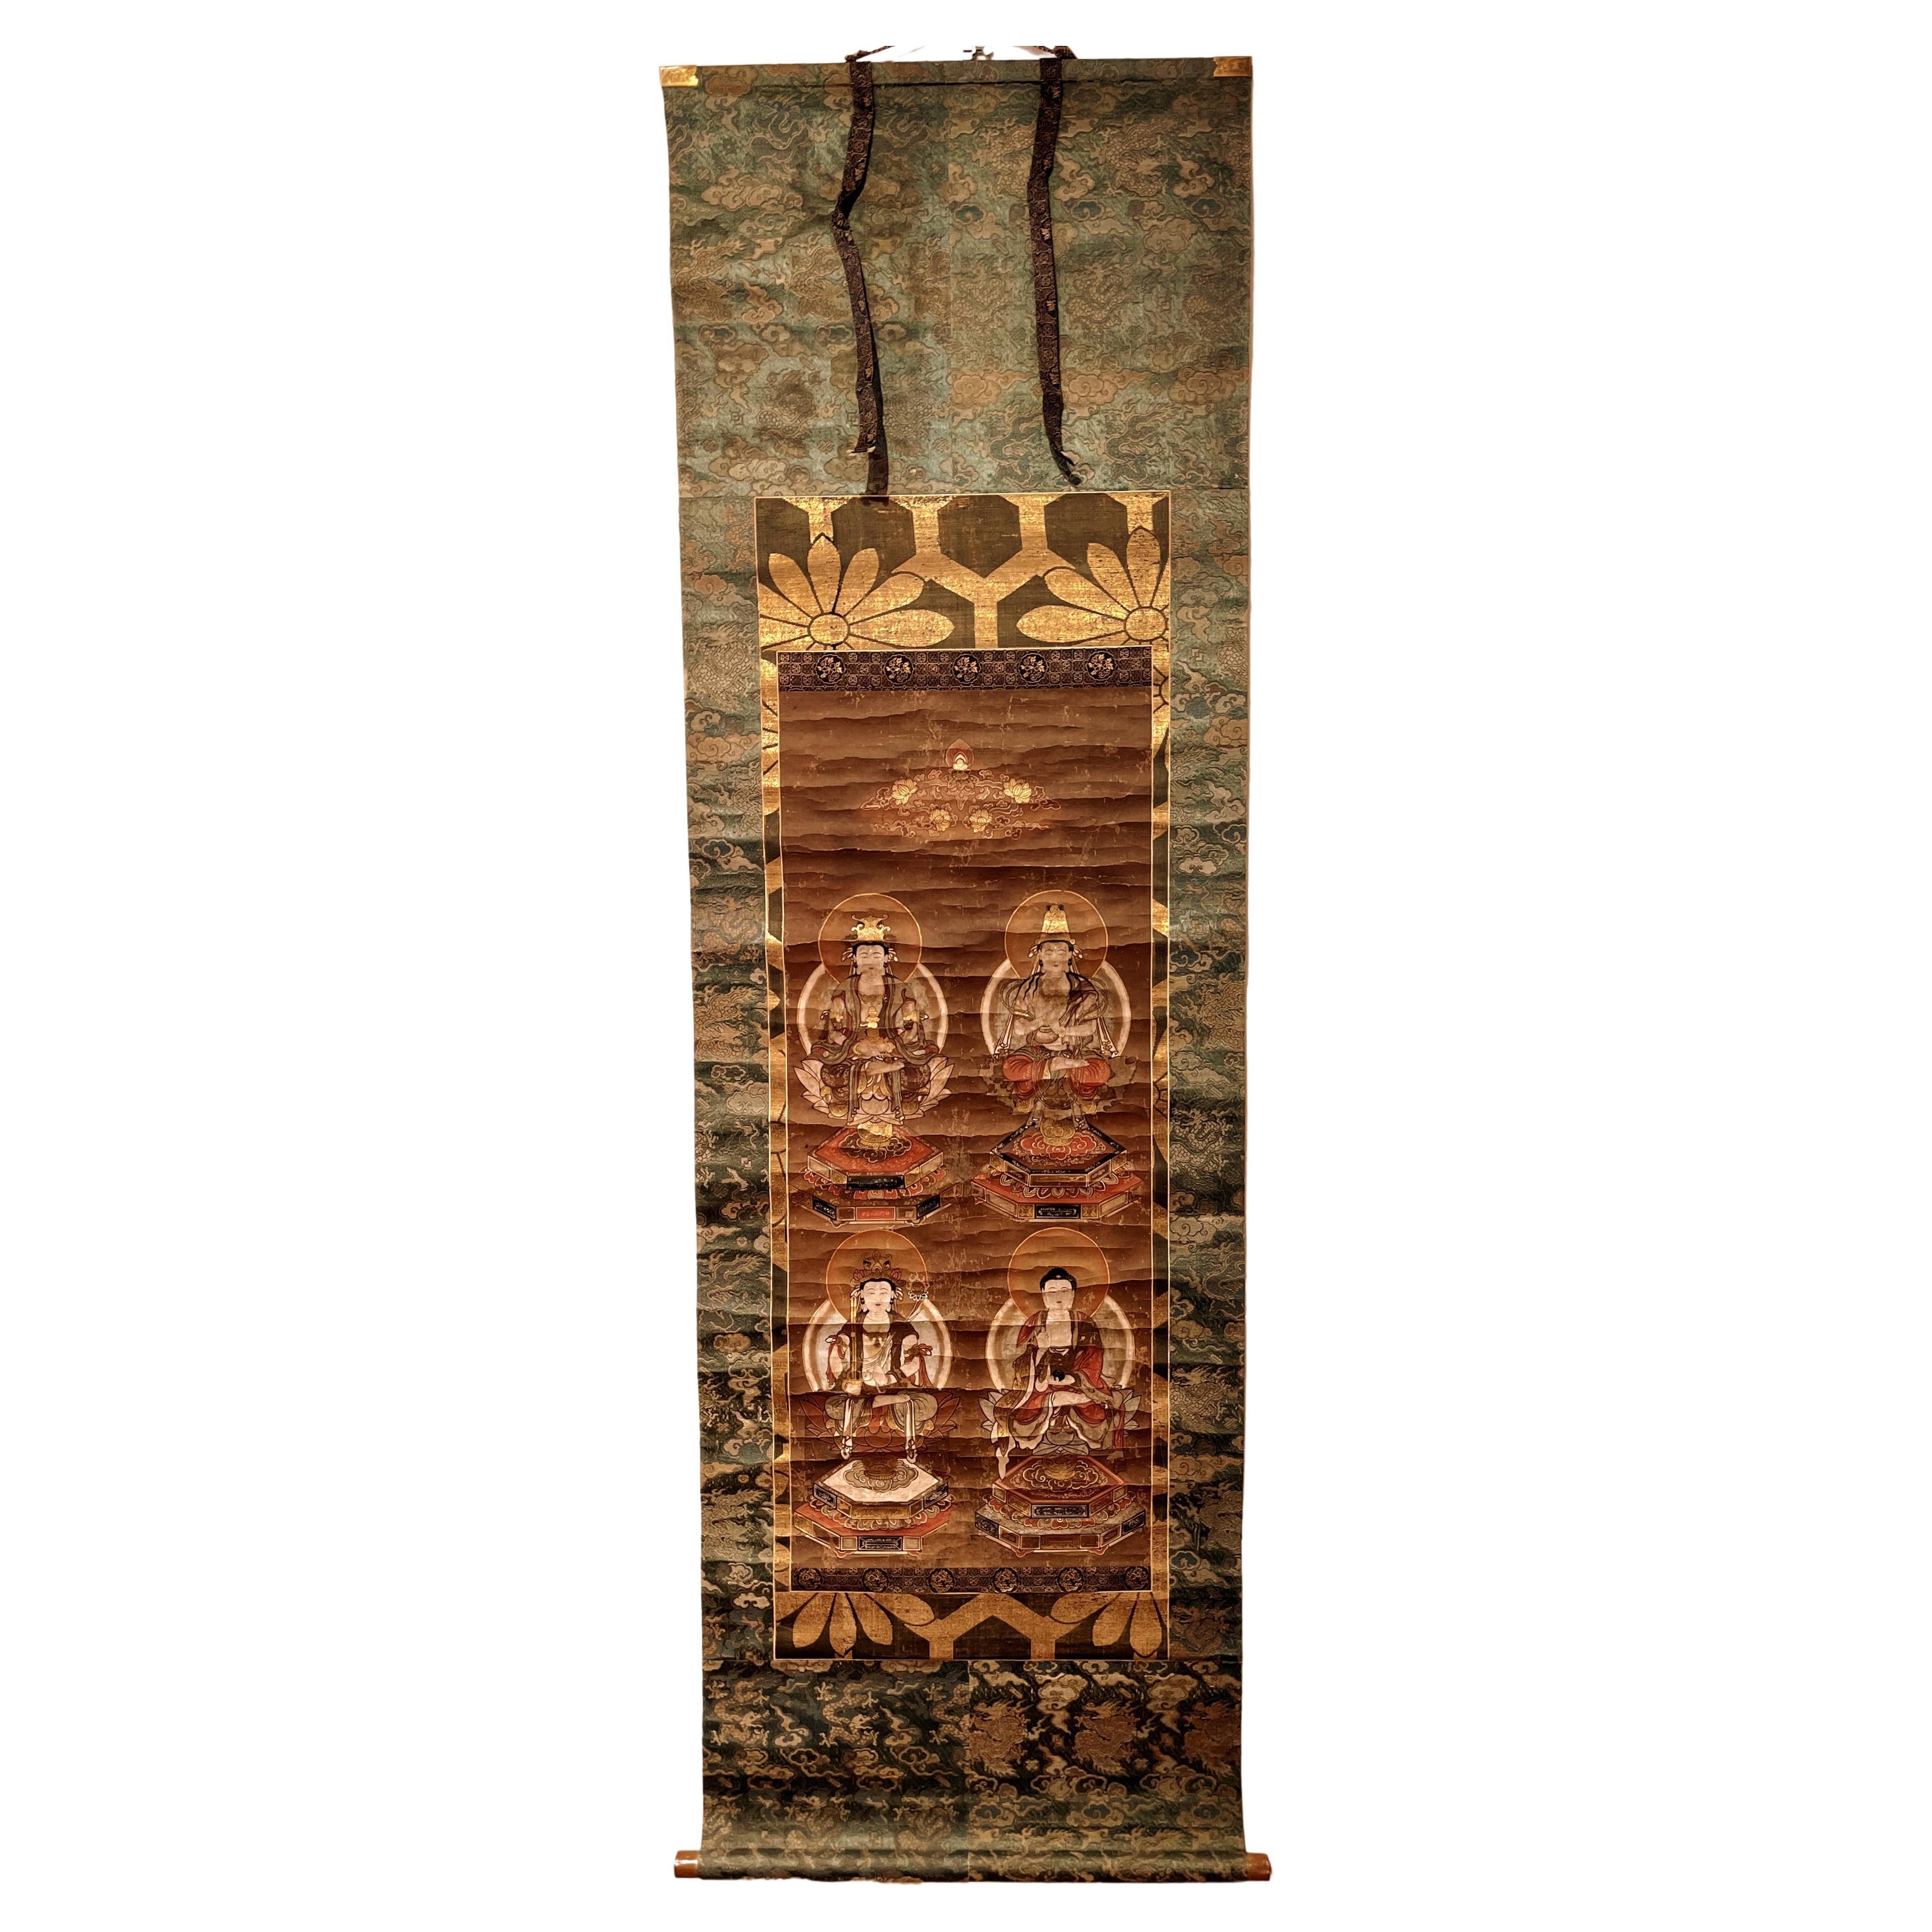 Japanisches buddhistisches Gemälde, hängendes Schnörkelgemälde